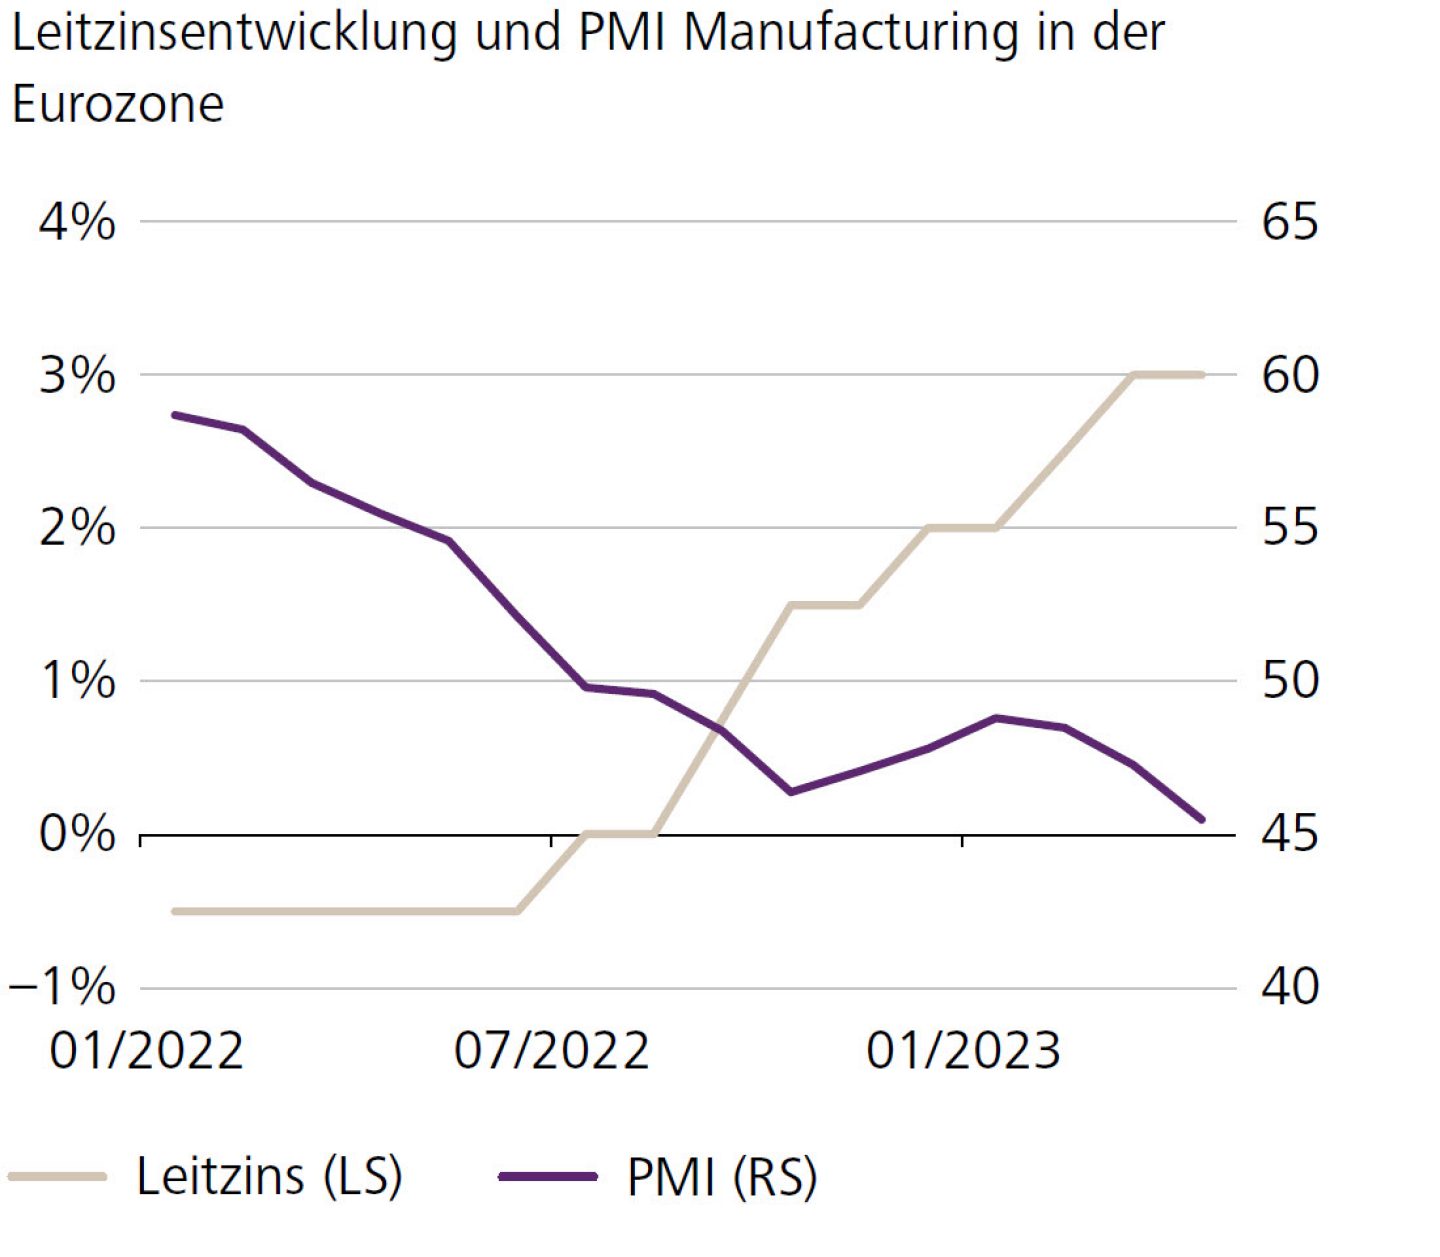 Leitzinsentwicklung und PMI Manufacturing in der Eurozone